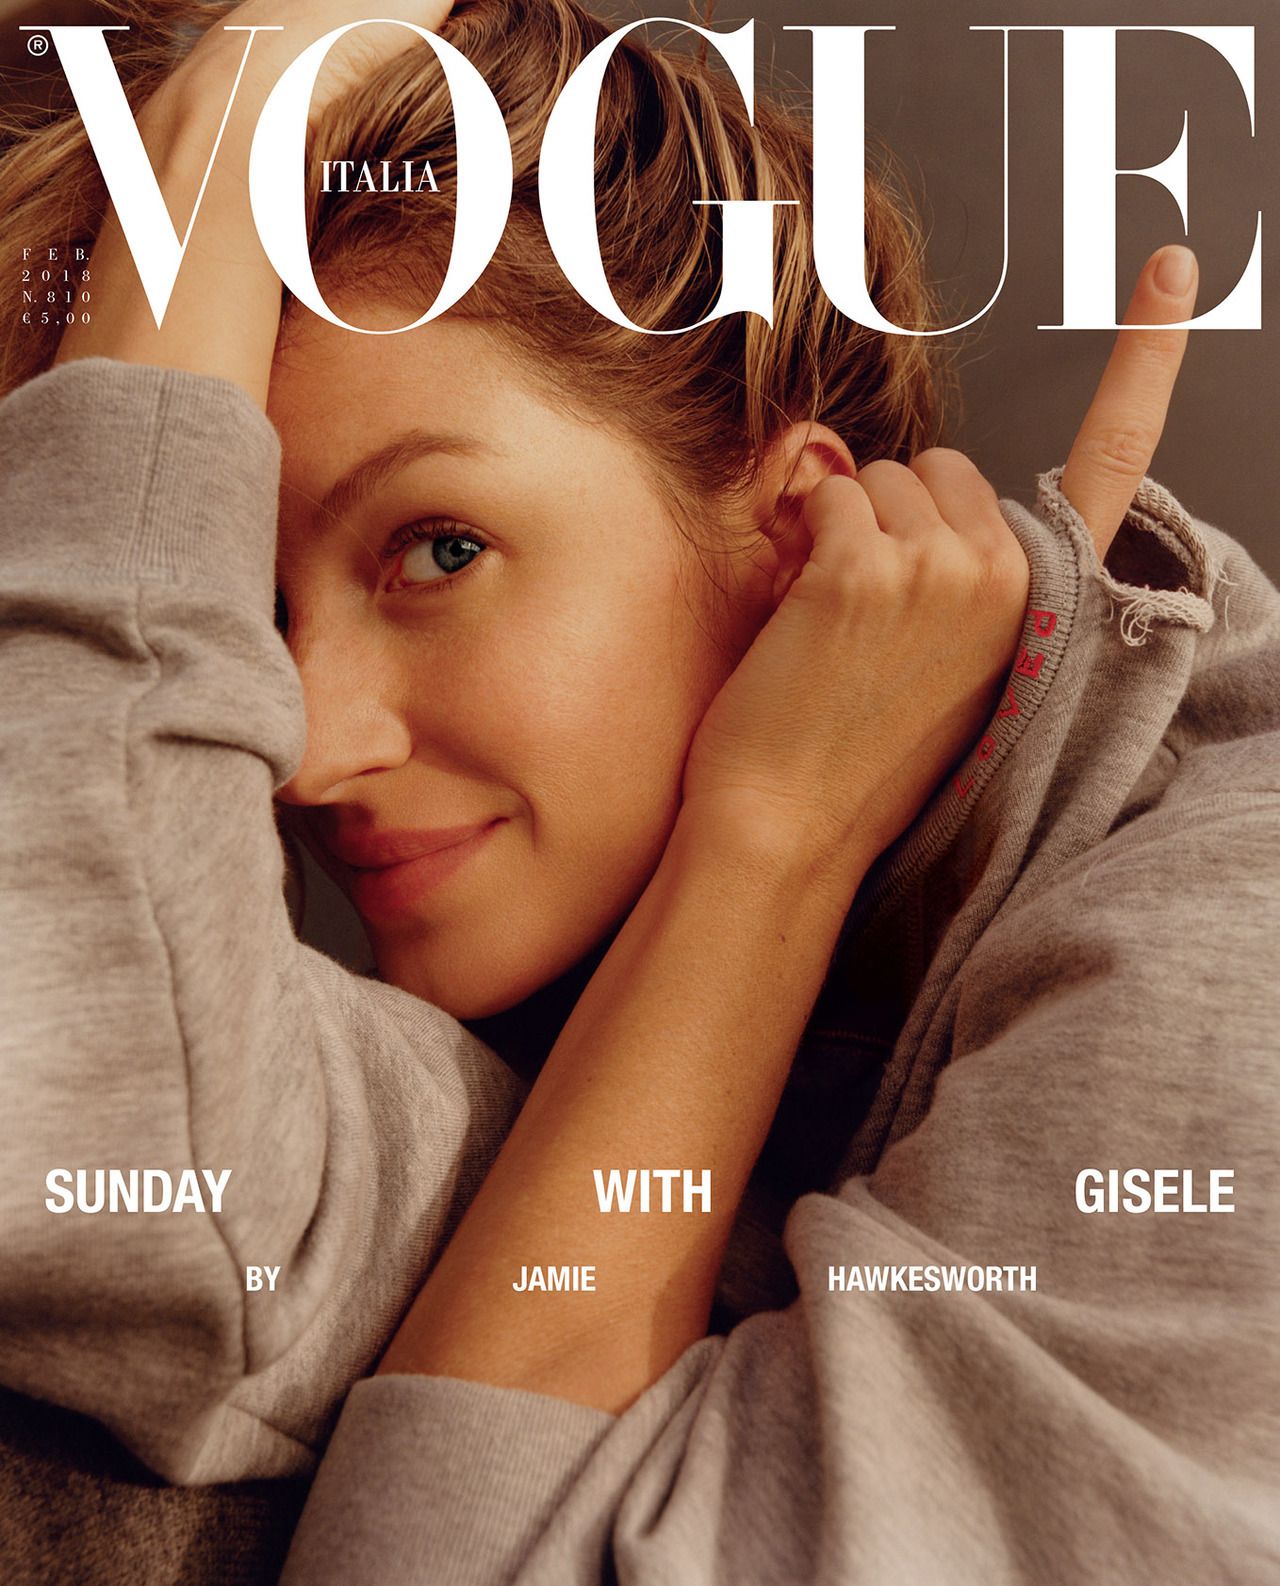 Cover Vogue Italia February 2018 | Jamie Hawkesworth | Vogue Italia | Numerique Retouch Photo Retouching Studio